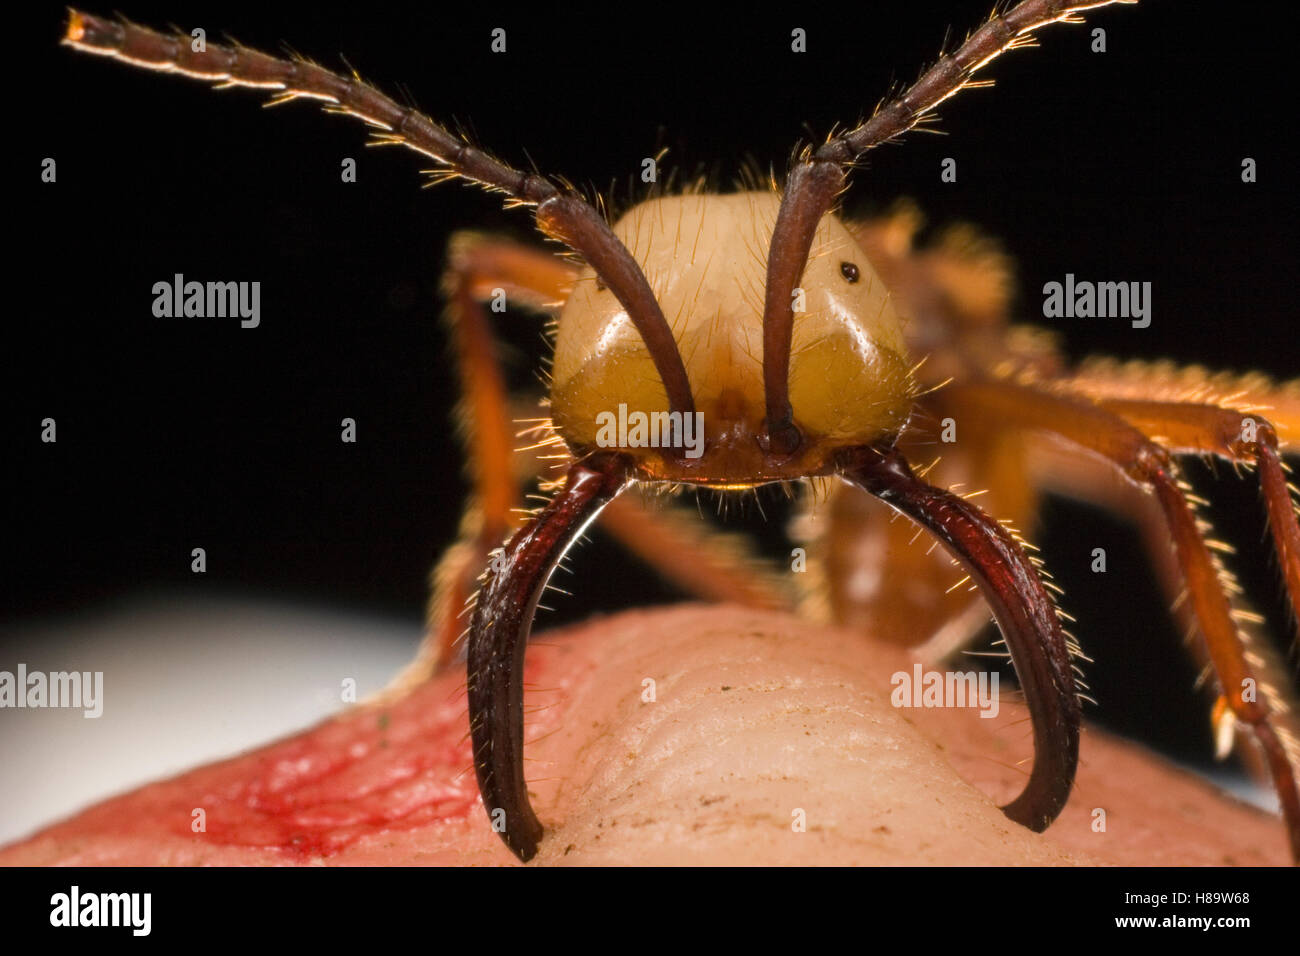 Ejército Eciton hamatum (Ant) principales trabajador mordiendo el dedo mientras las mandíbulas escozor que gira el dedo rojo. También se denomina Foto de stock